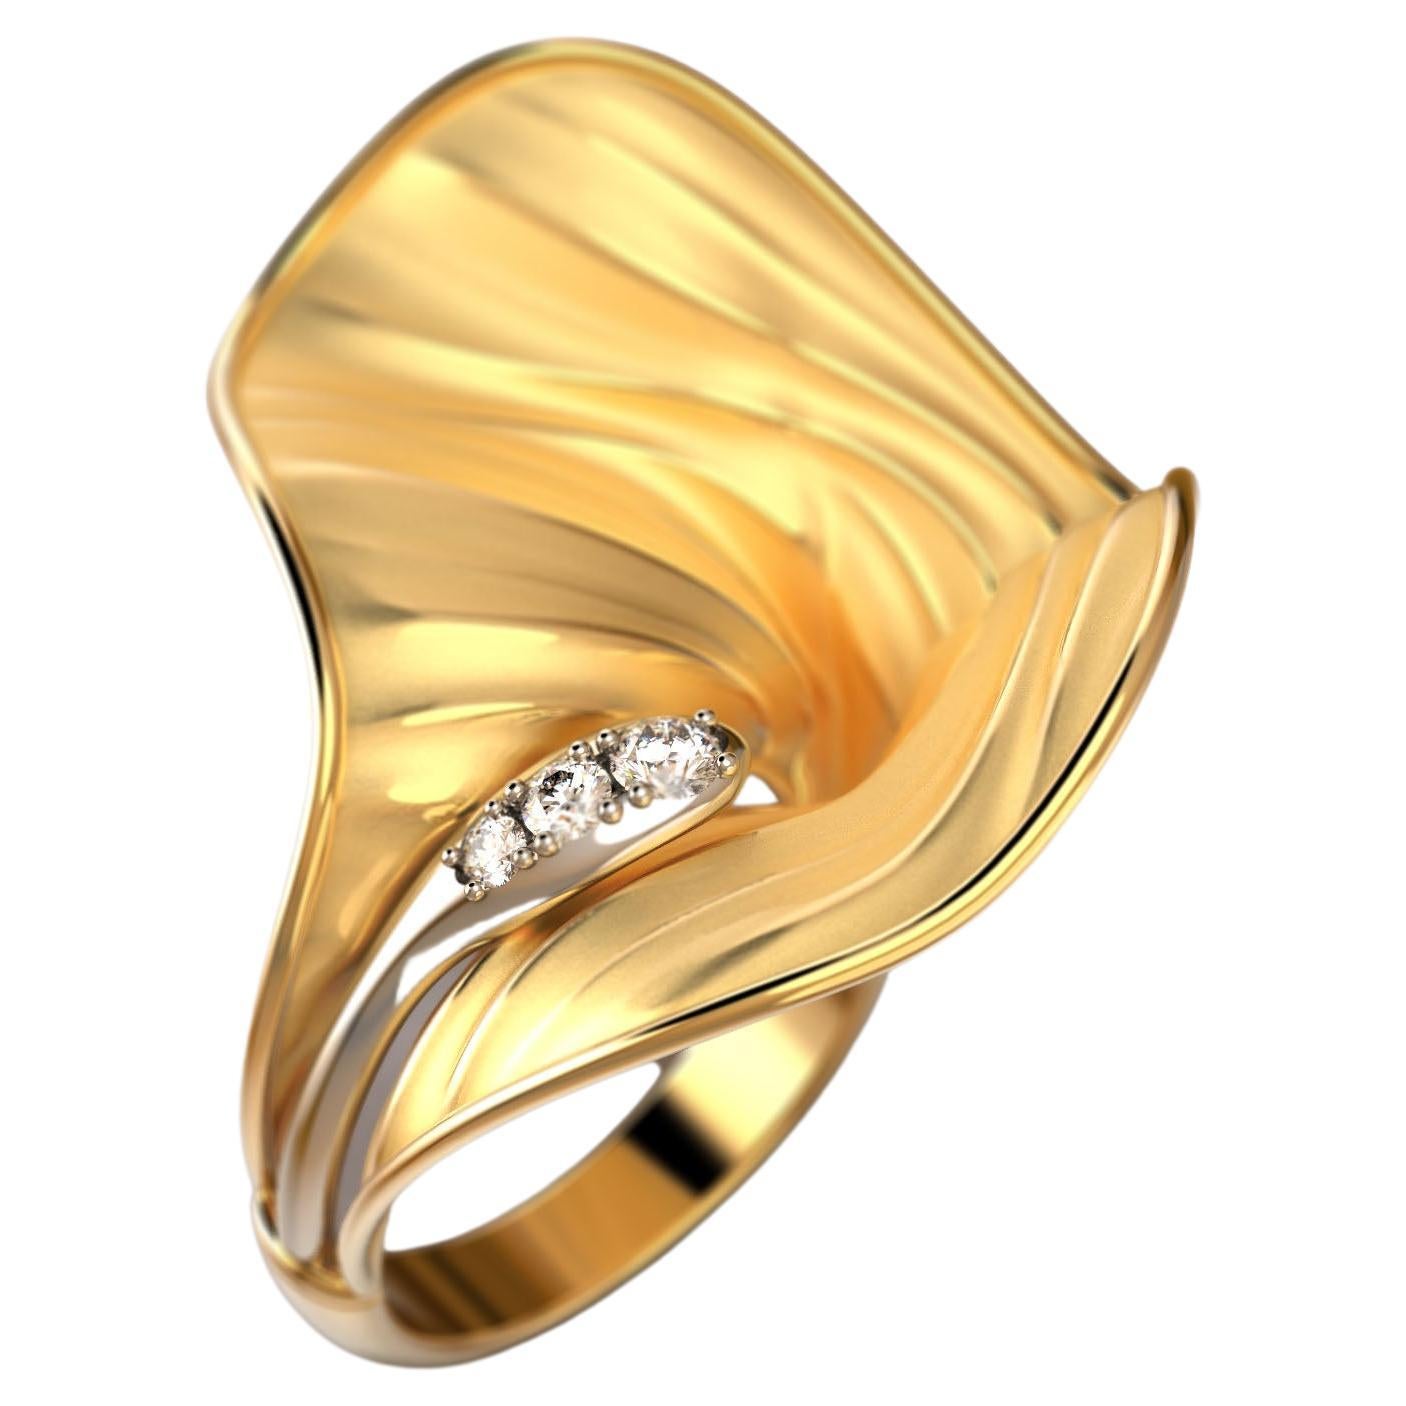 Oltremare Gioielli: 18 Karat Goldring mit Diamanten, hergestellt in Italien